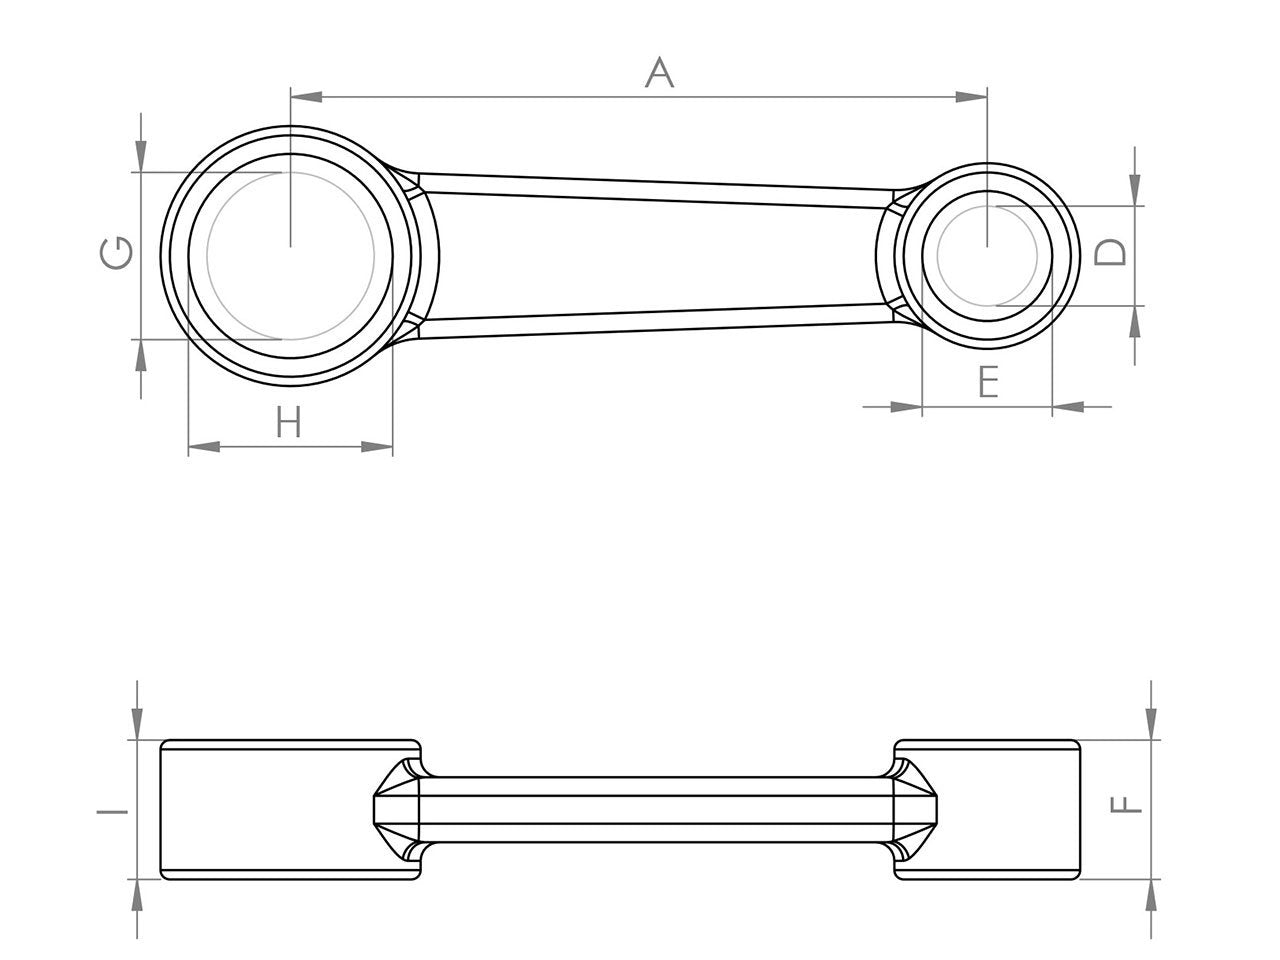 Zeichnung Barikit Pleuel für einen Honda Moped Motor mit Bemaßung.